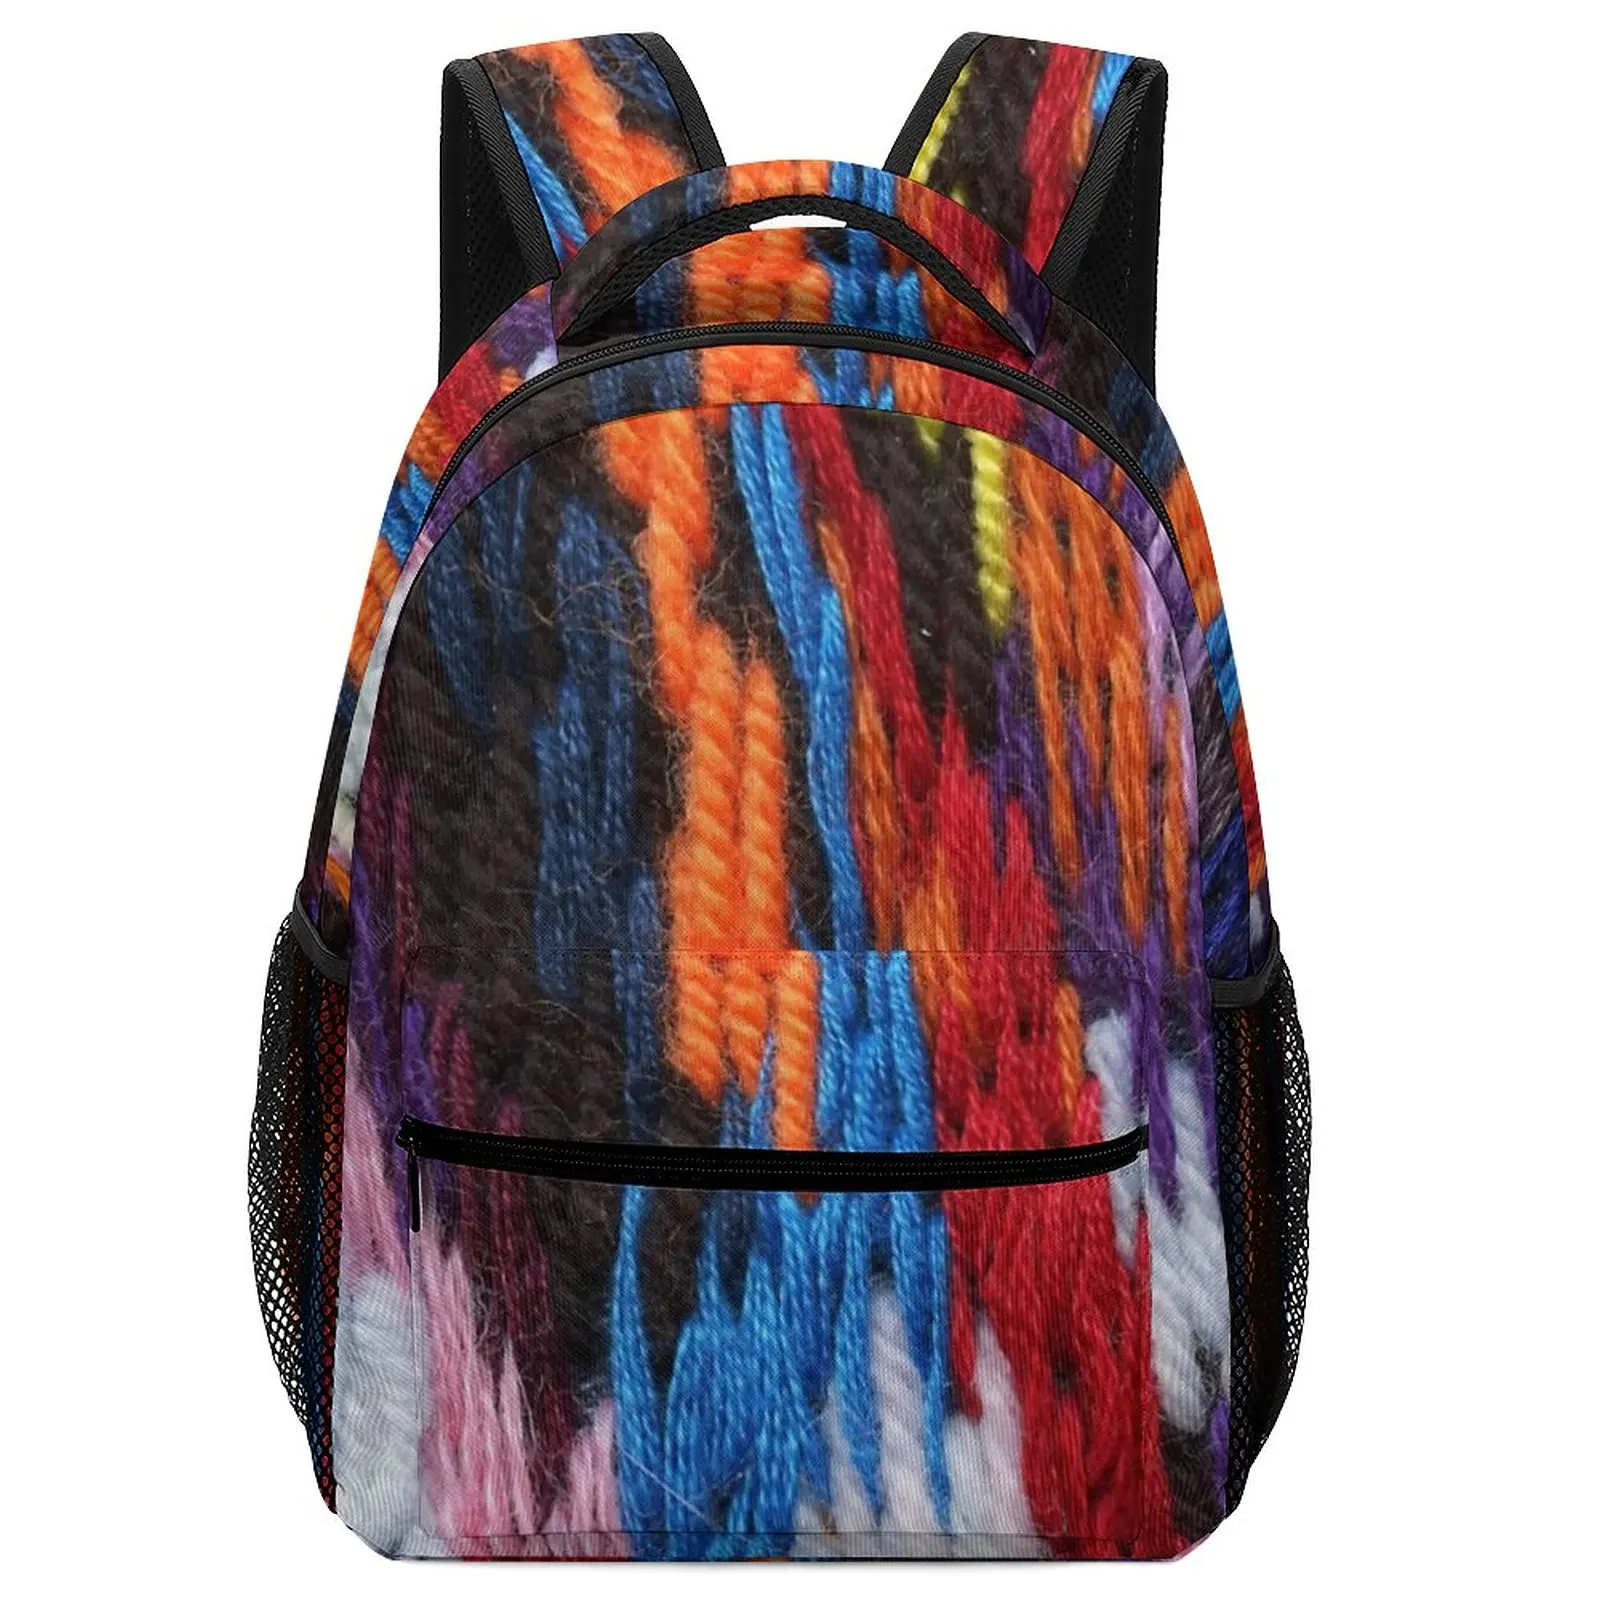 Space Student Kids Art Children's Cotton Backpack Women Bag Aesthetic Backpacks For School